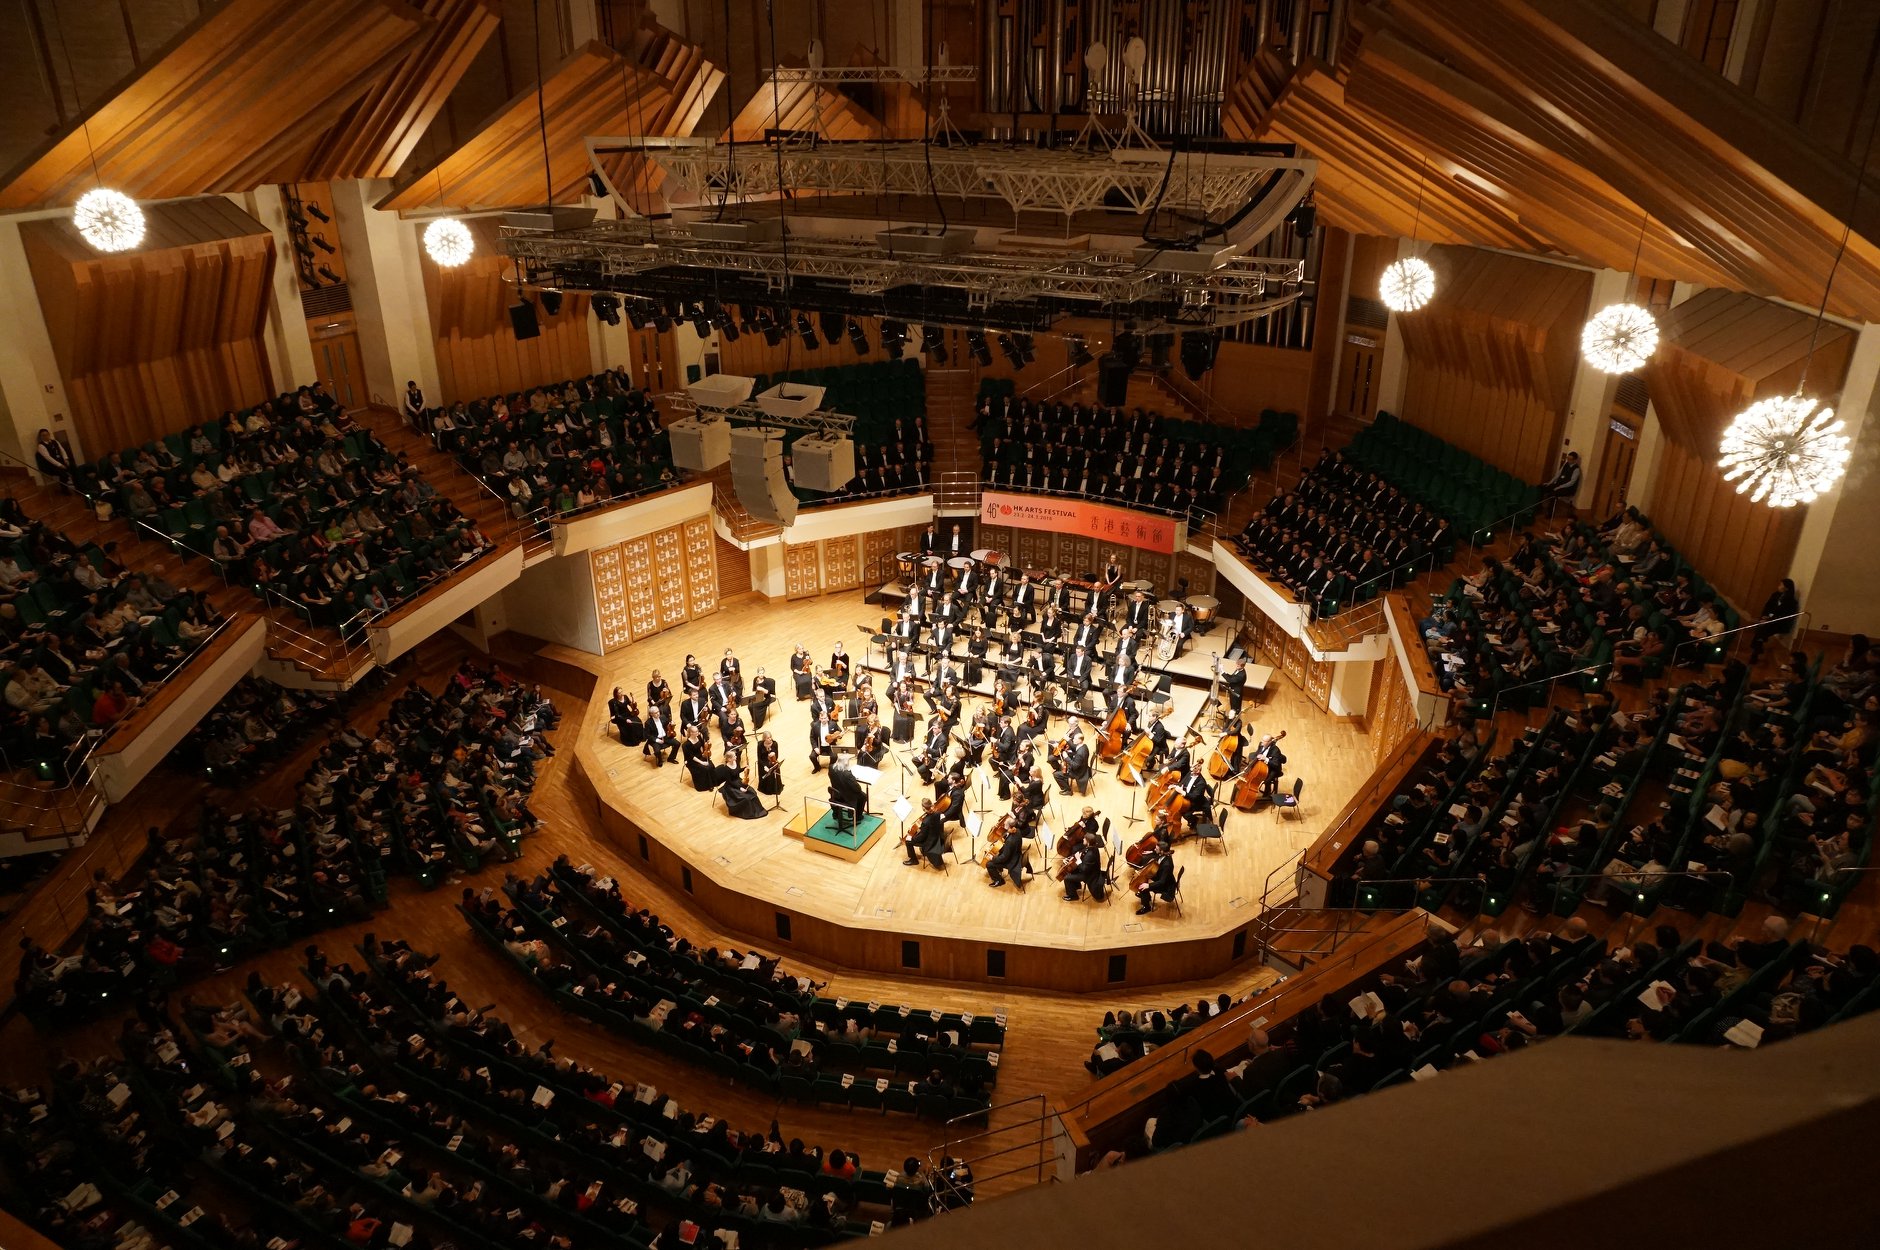 L’Orchestre Symphonique National d’Estonie en tournée en France et en Allemagne